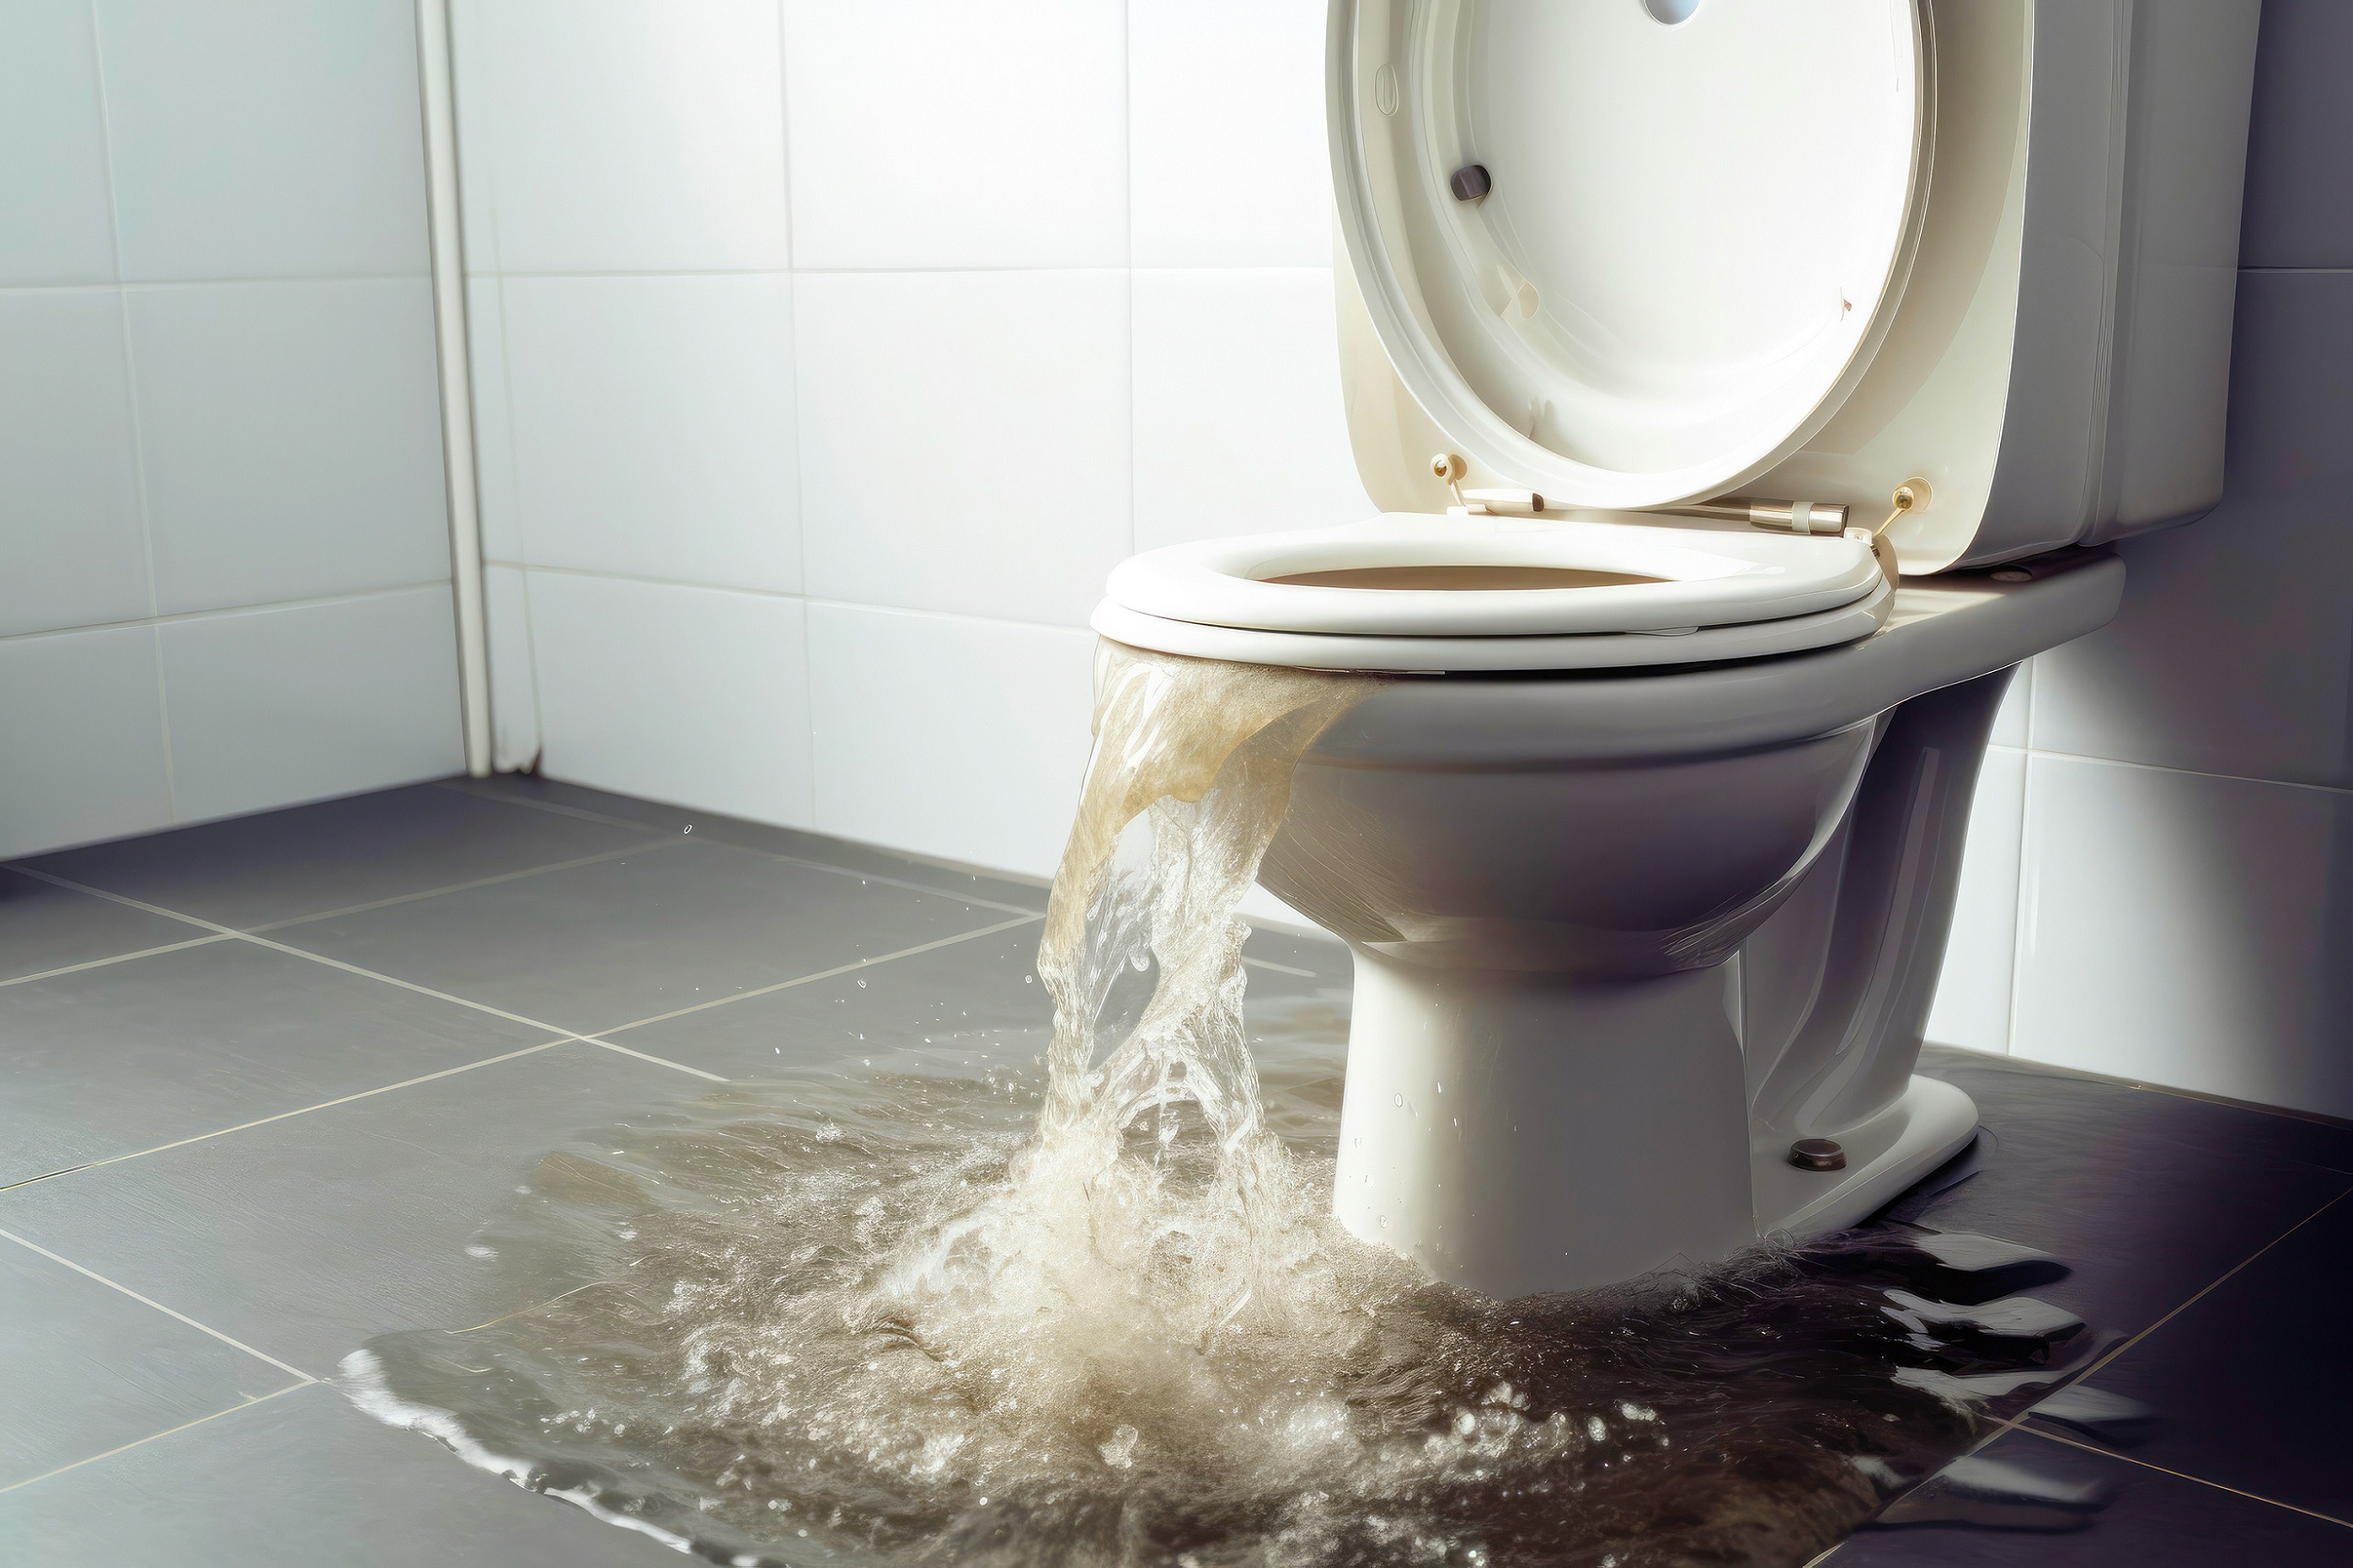 Débouchage de WC : coûts, méthodes, prévention et conseils pratiques